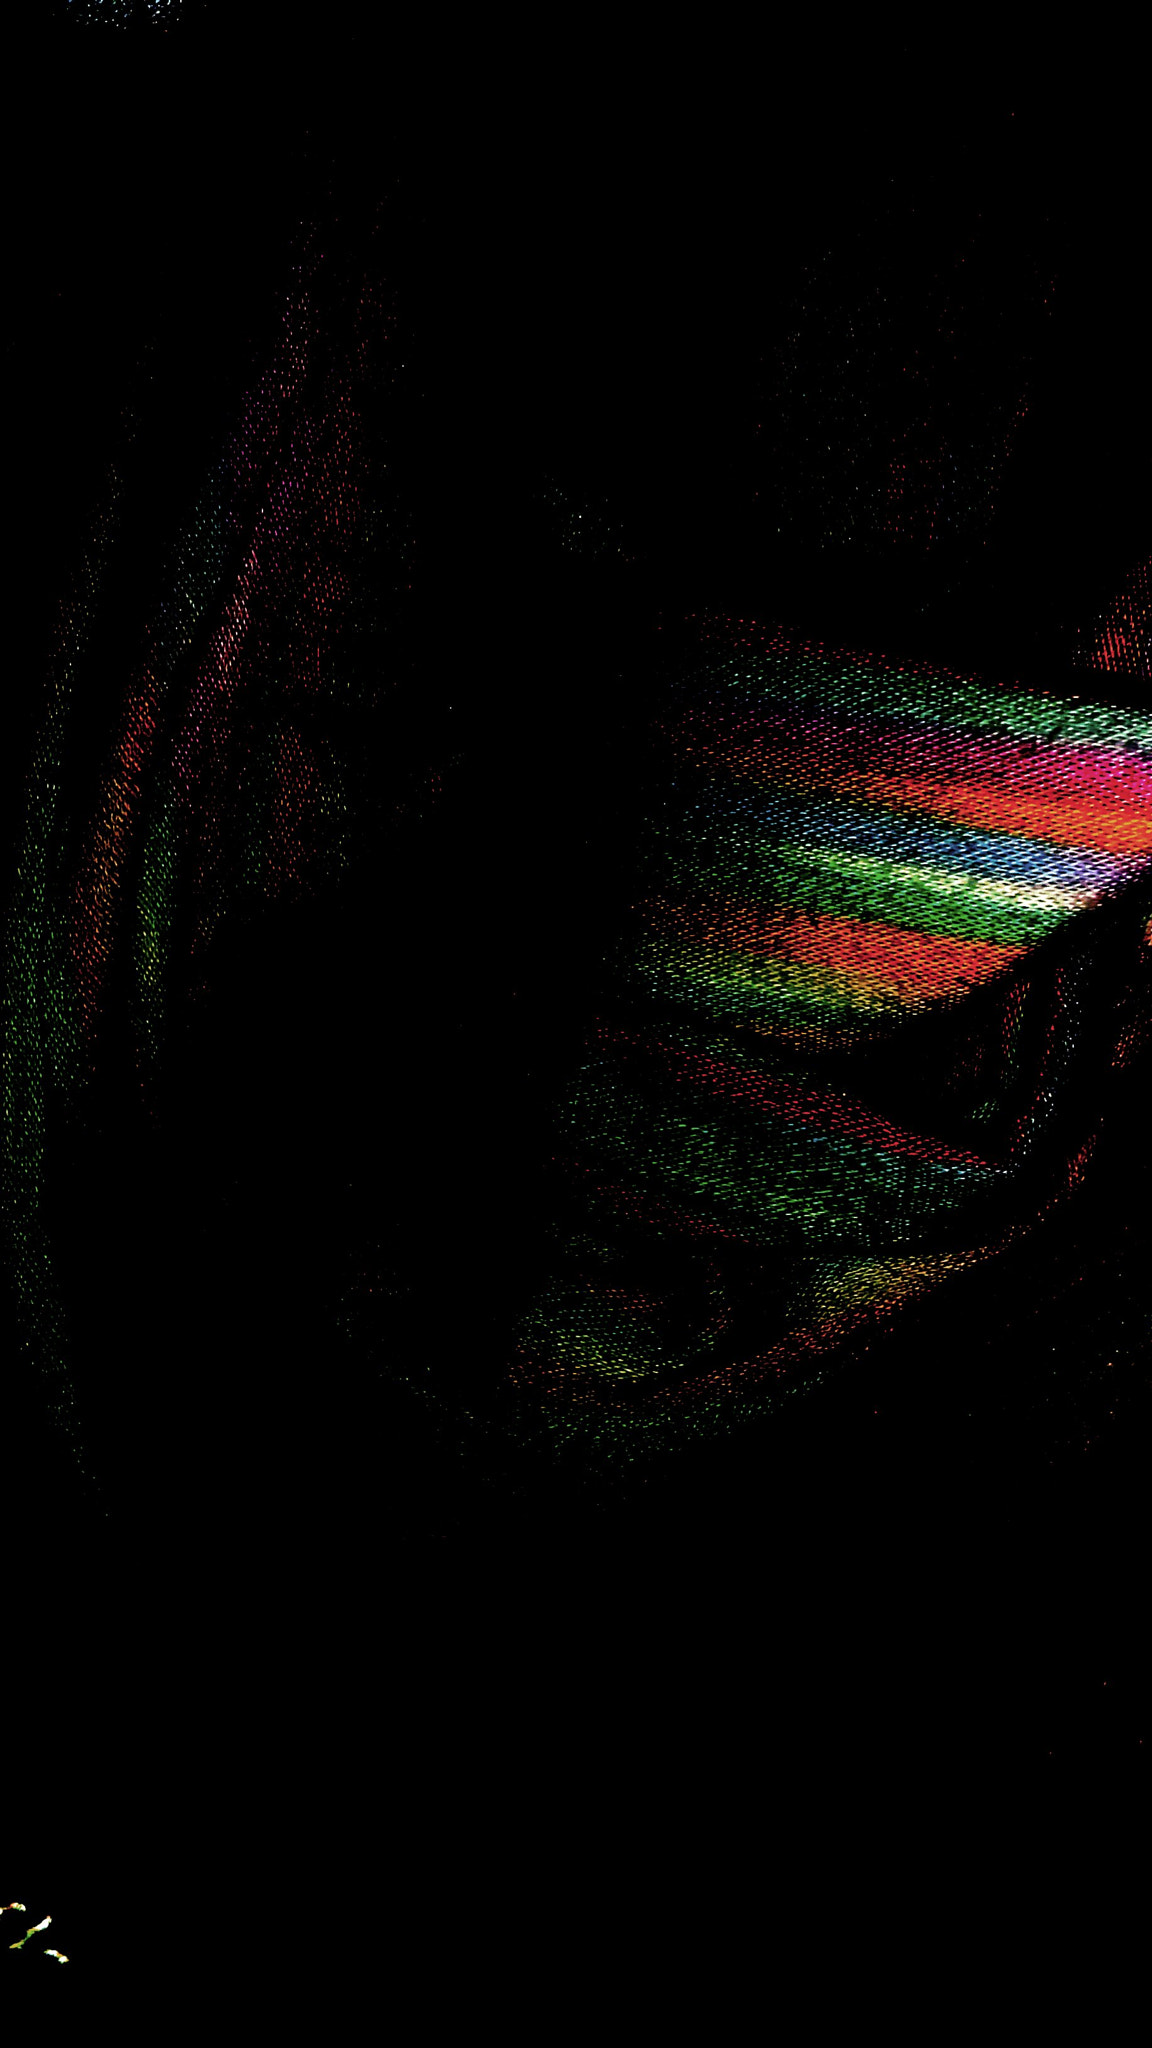 HTC DESRIE D530 sample photo. Rainbow squeeze dissolve photography